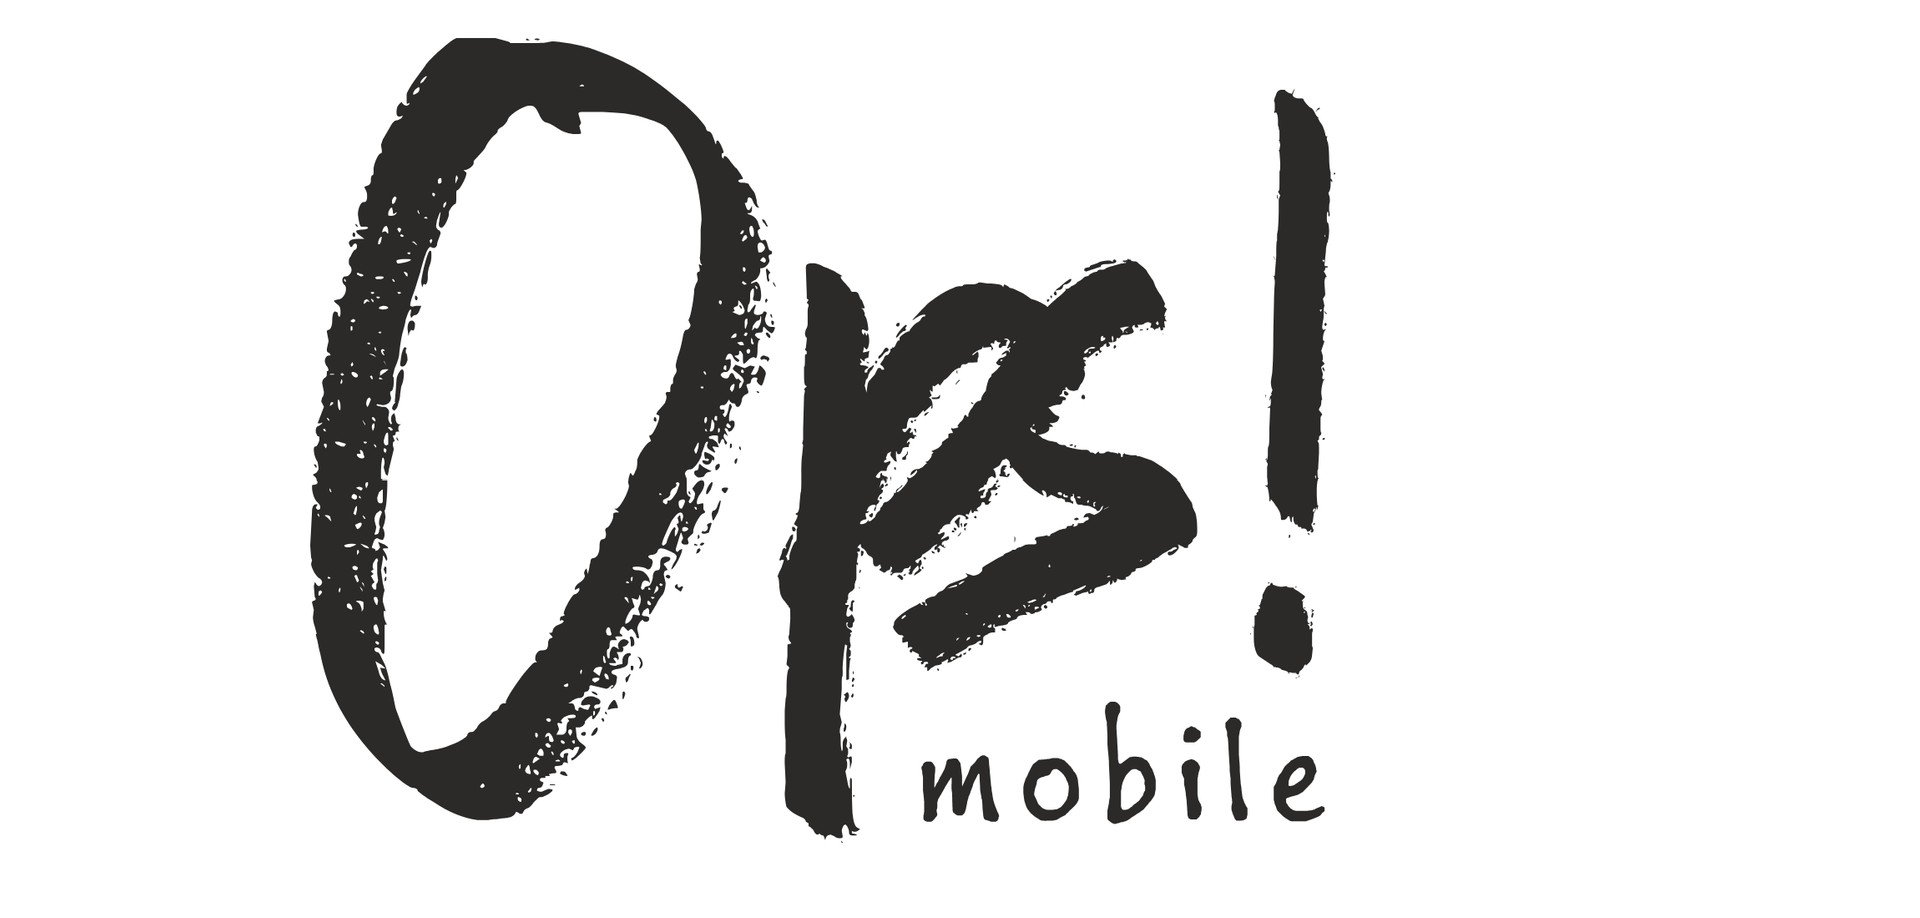 Ops! Mobile, arriva un nuovo operatore virtuale Vodafone low cost